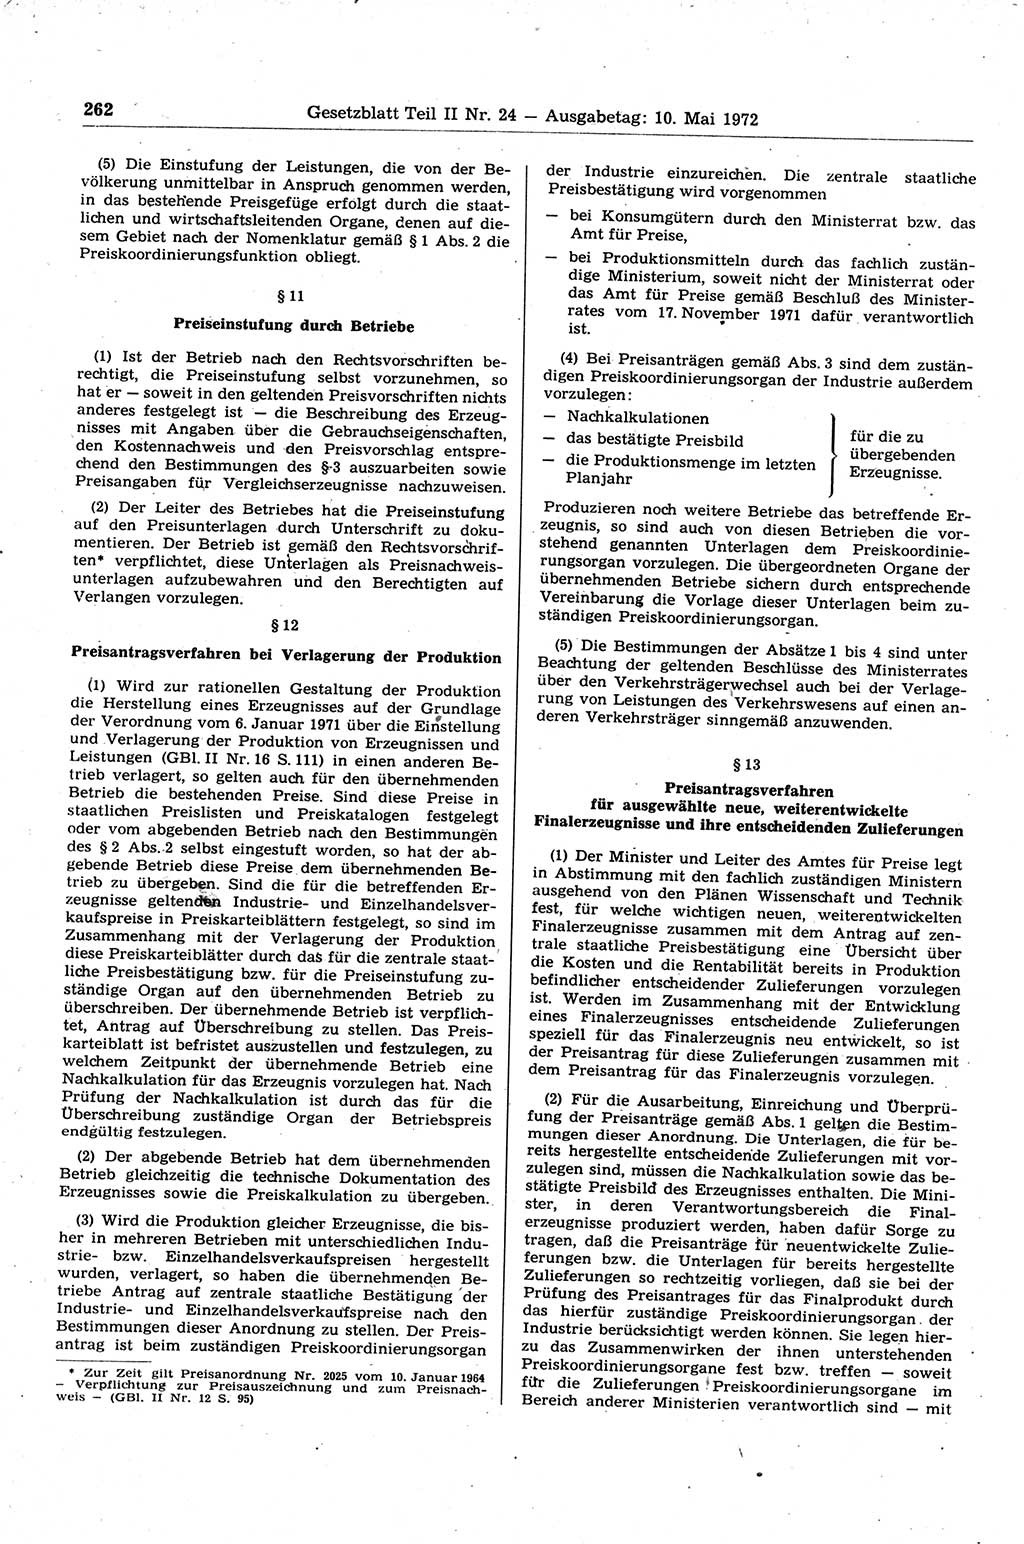 Gesetzblatt (GBl.) der Deutschen Demokratischen Republik (DDR) Teil ⅠⅠ 1972, Seite 262 (GBl. DDR ⅠⅠ 1972, S. 262)